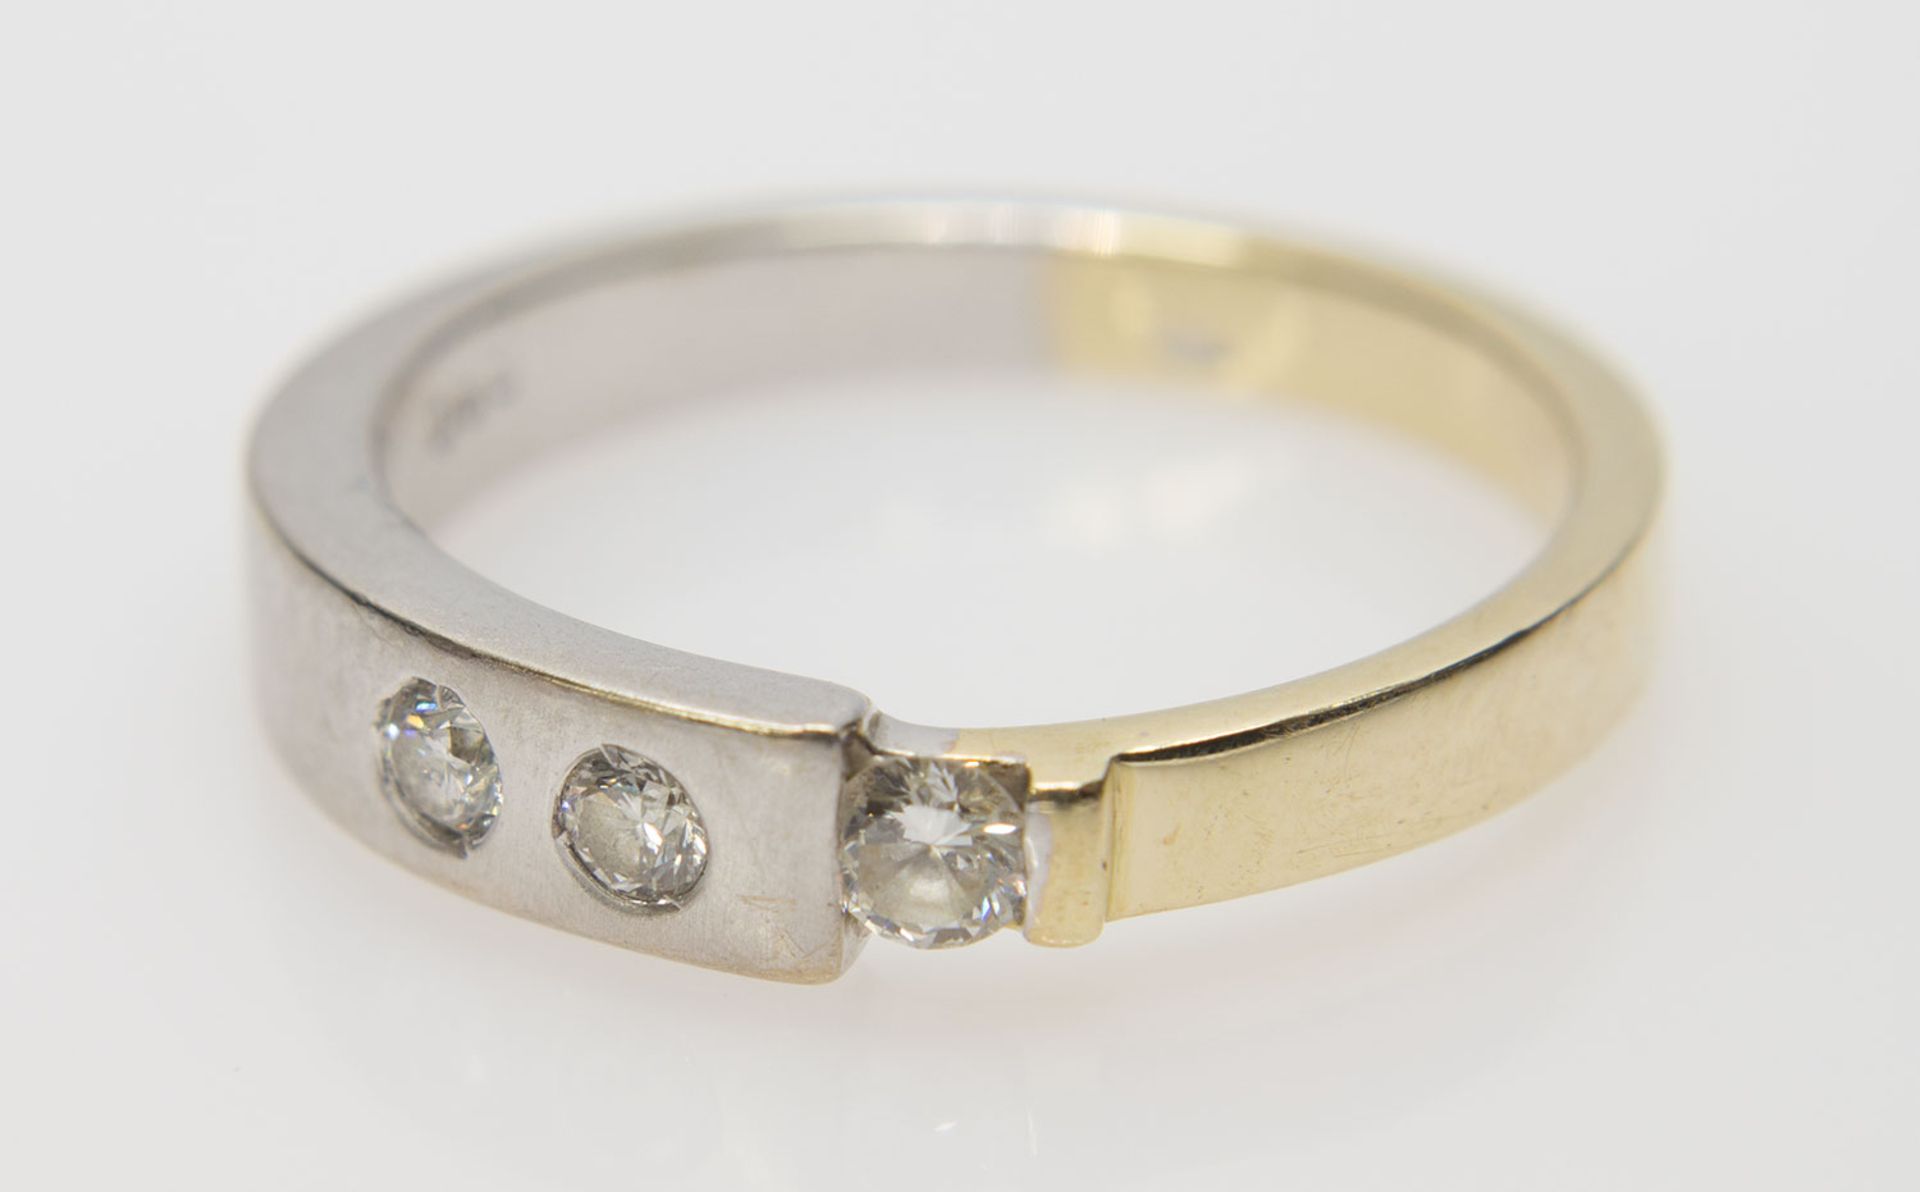 Damenring585er GG/WG, 3,9 g, zweifarbig gearbeiteter Ring mit 3 gefassten Brillanten (zus. ca. 0,